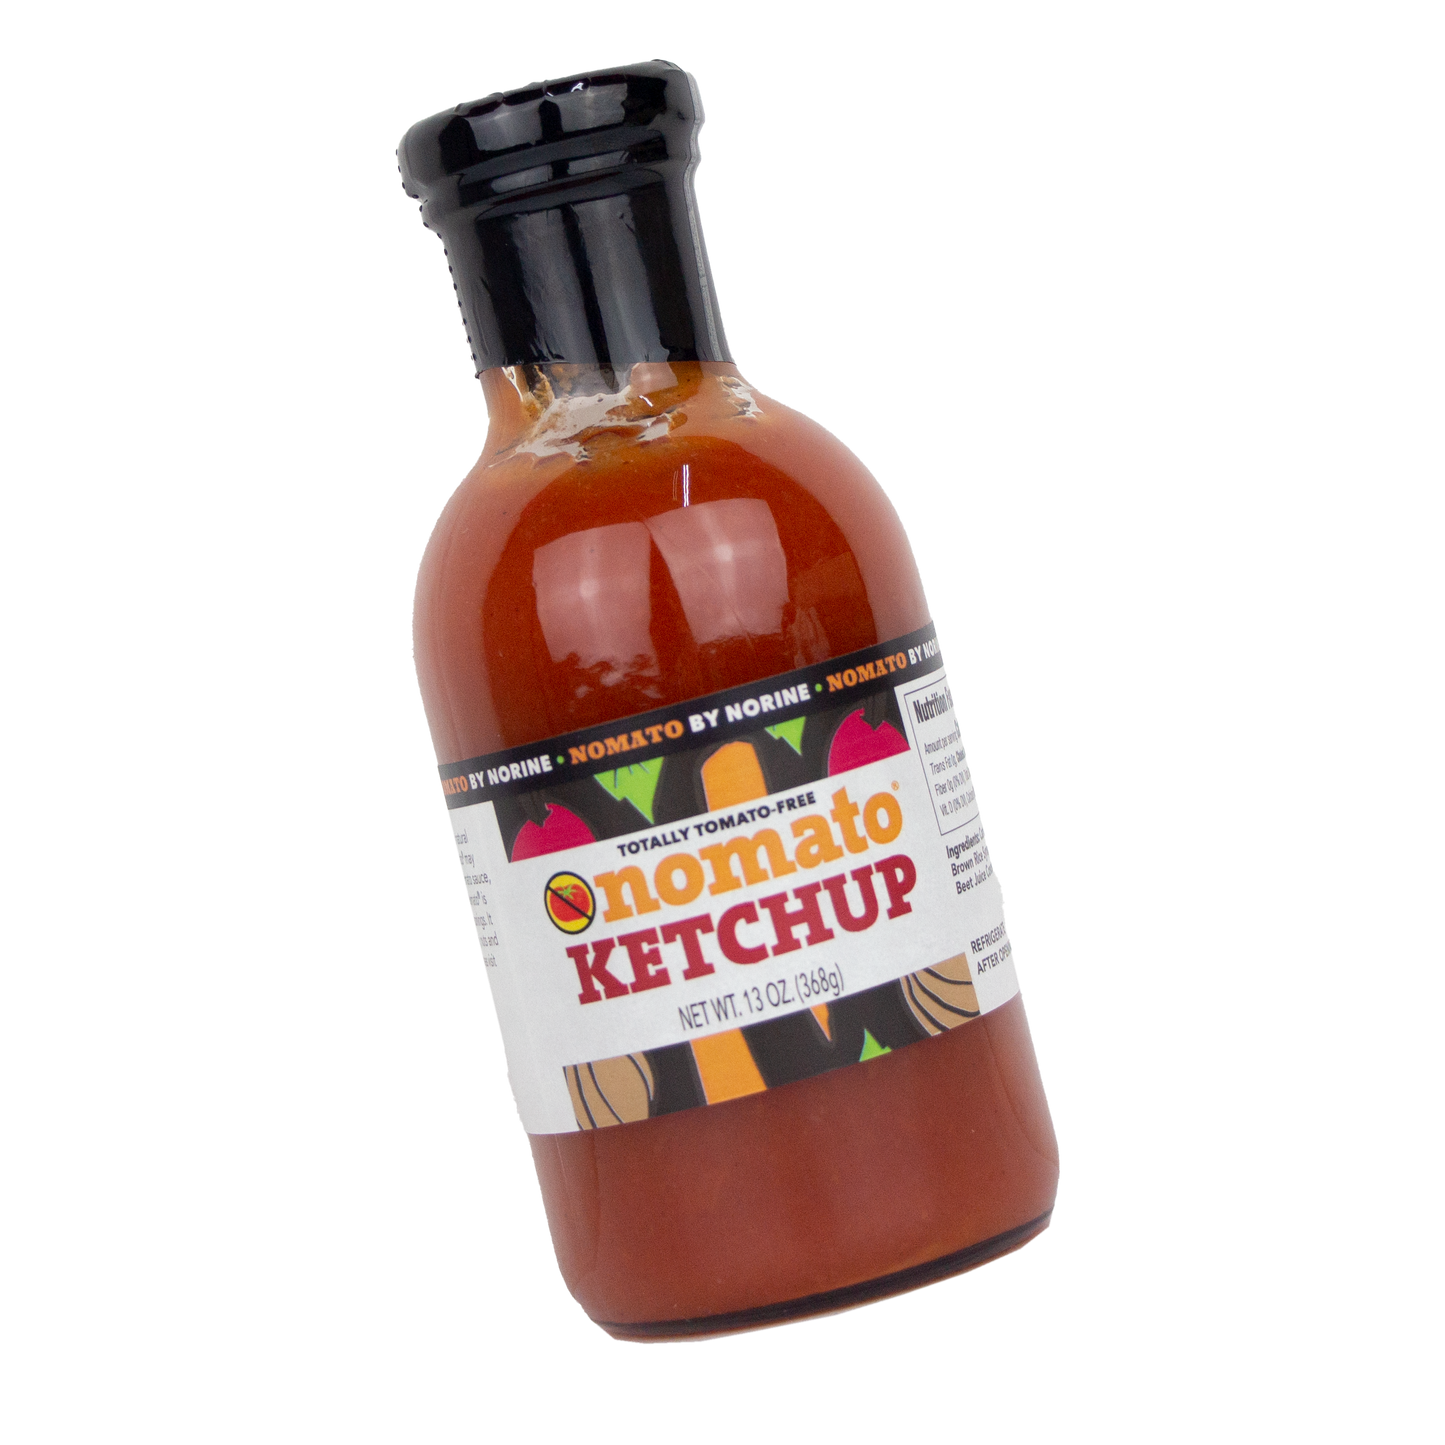 Nomato Ketchup